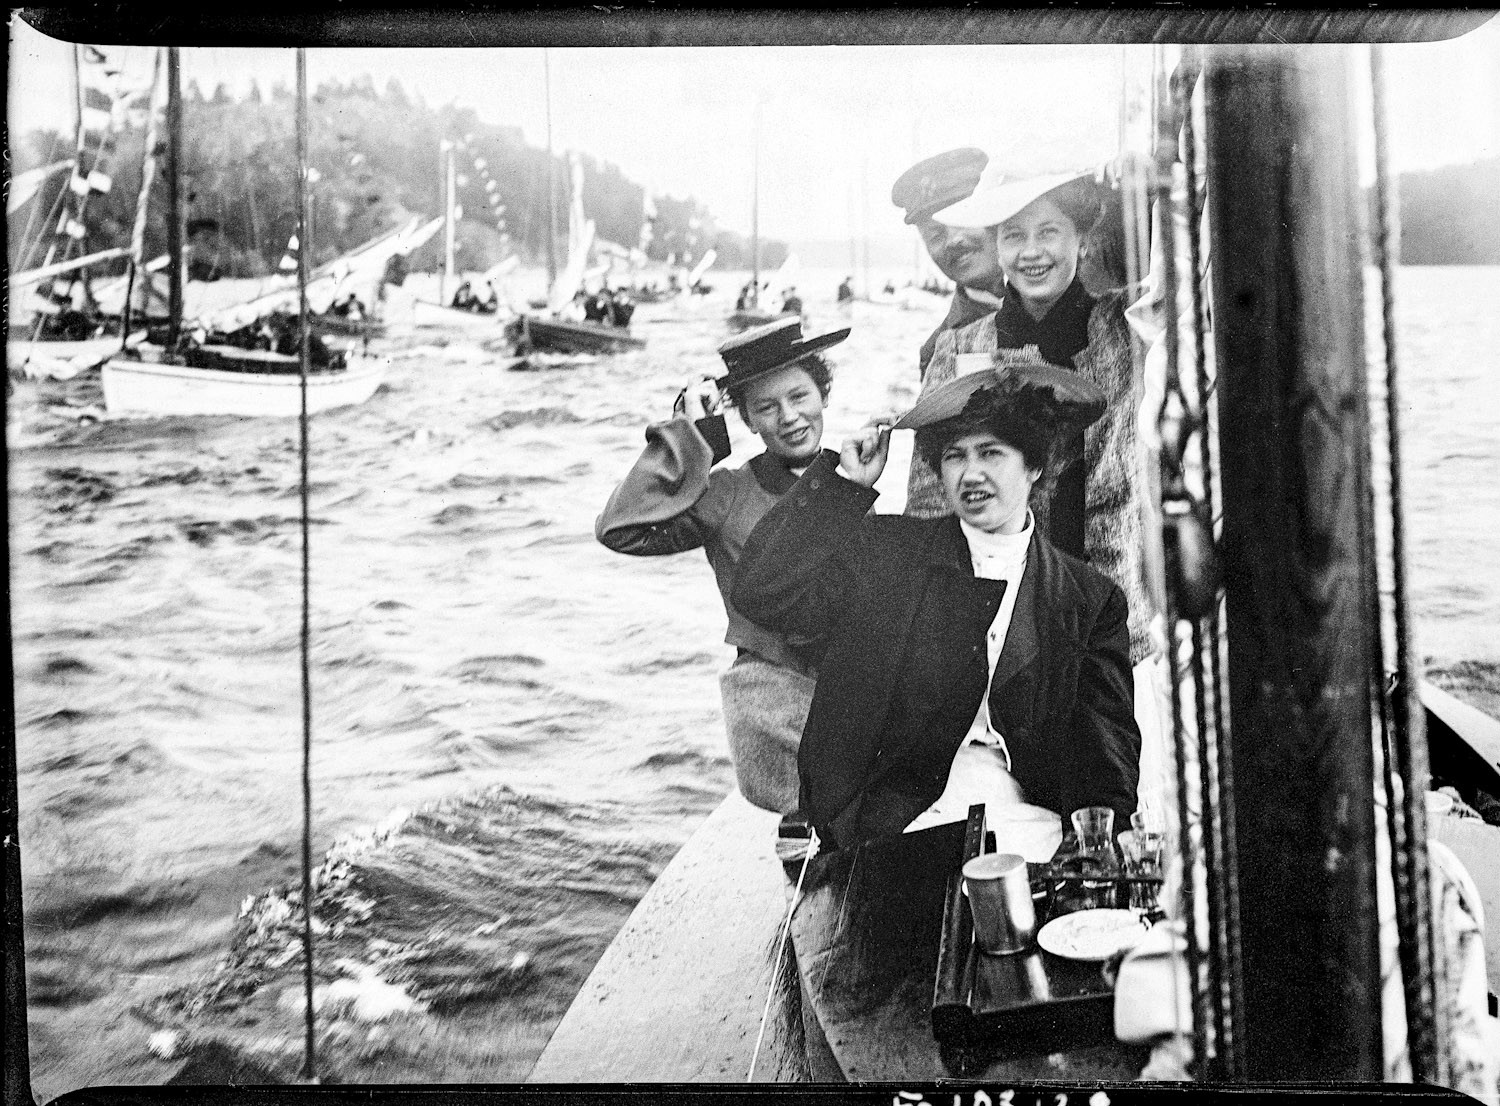 SSS Allmänna kappsegling 14 augusti 1904. Ingeborg Gustafsson, Birger Gustafssons hustru, är kvinnan närmast kameran. Okänd fotograf, Birger Gustafssons samling , Sjöhistoriska museet.